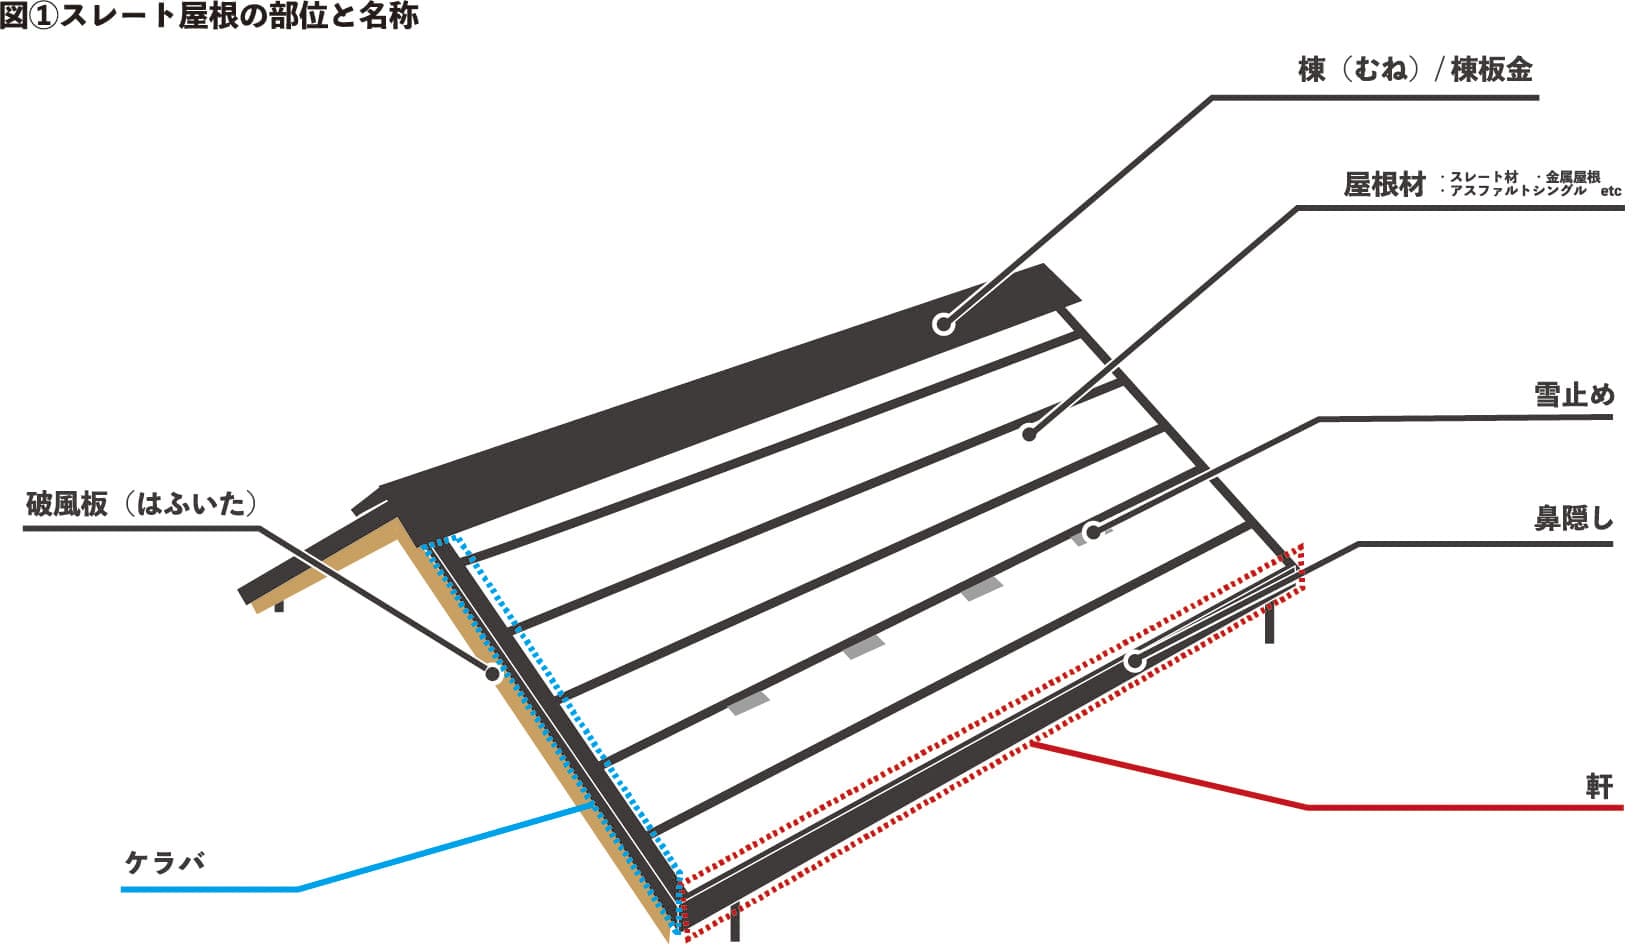 屋根の種類別「部位と名称」について